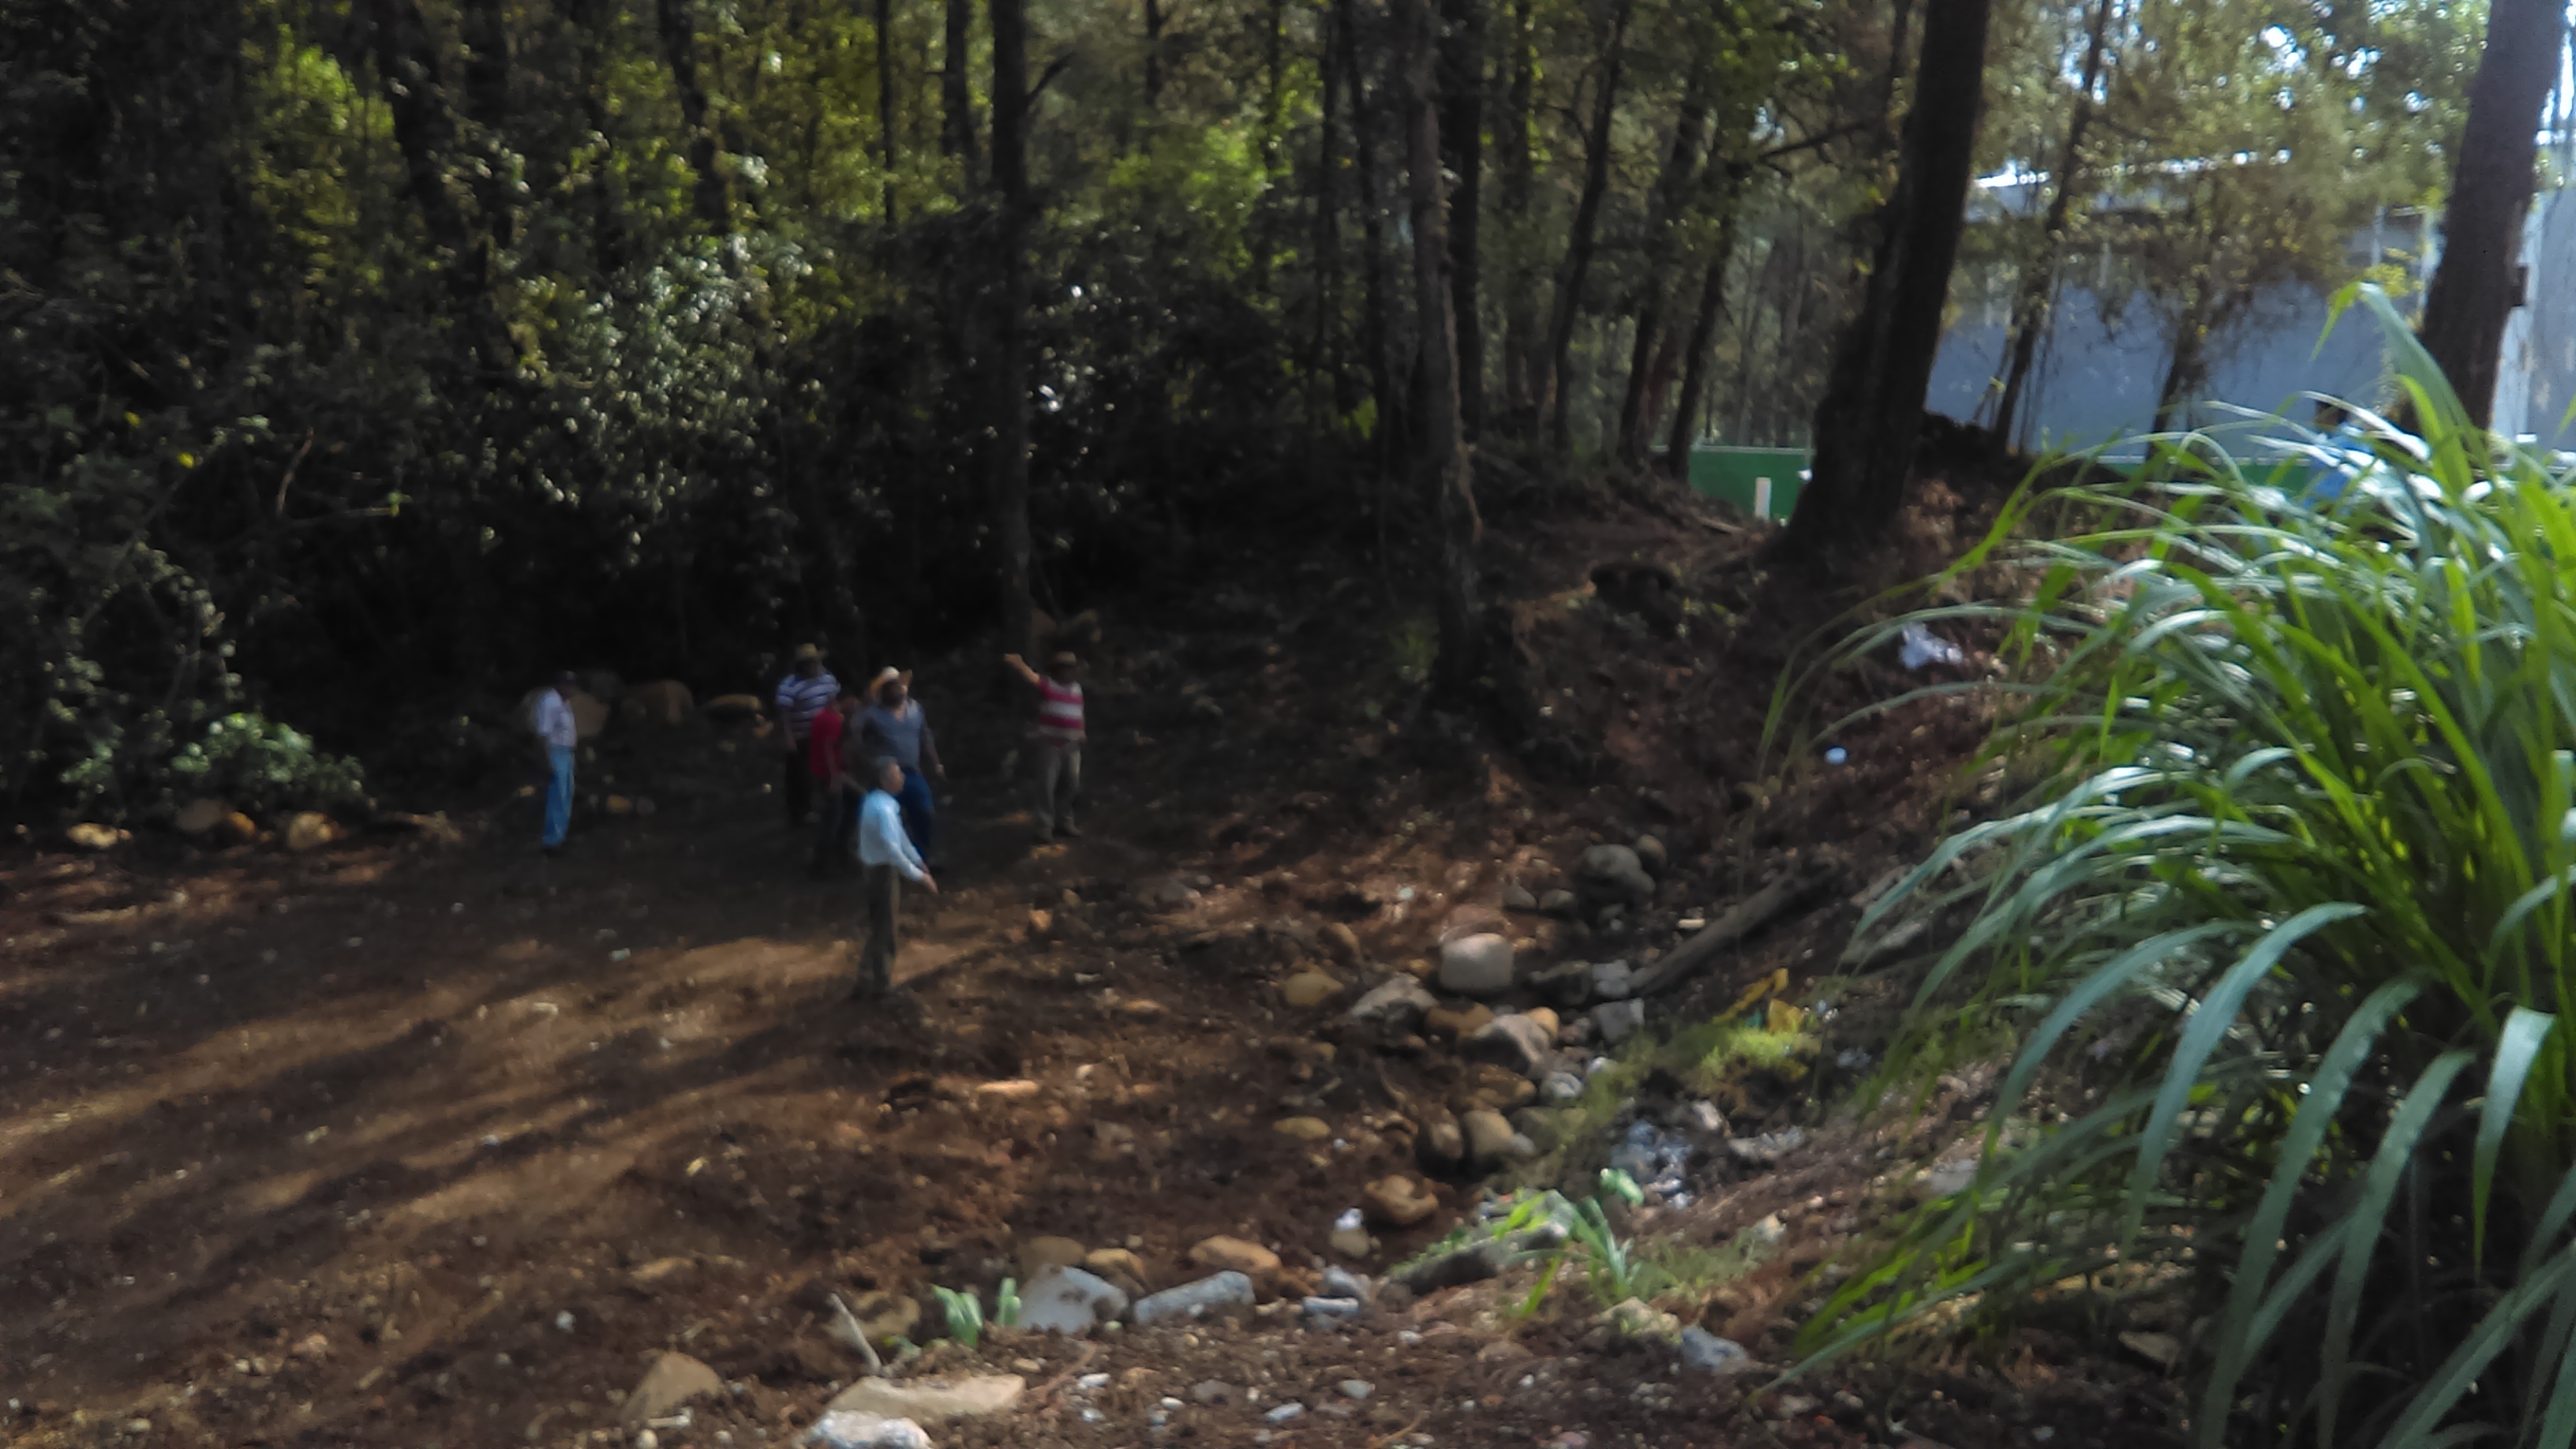  Planta de tratamiento violó leyes ambientales en Huauchinango: Biólogo